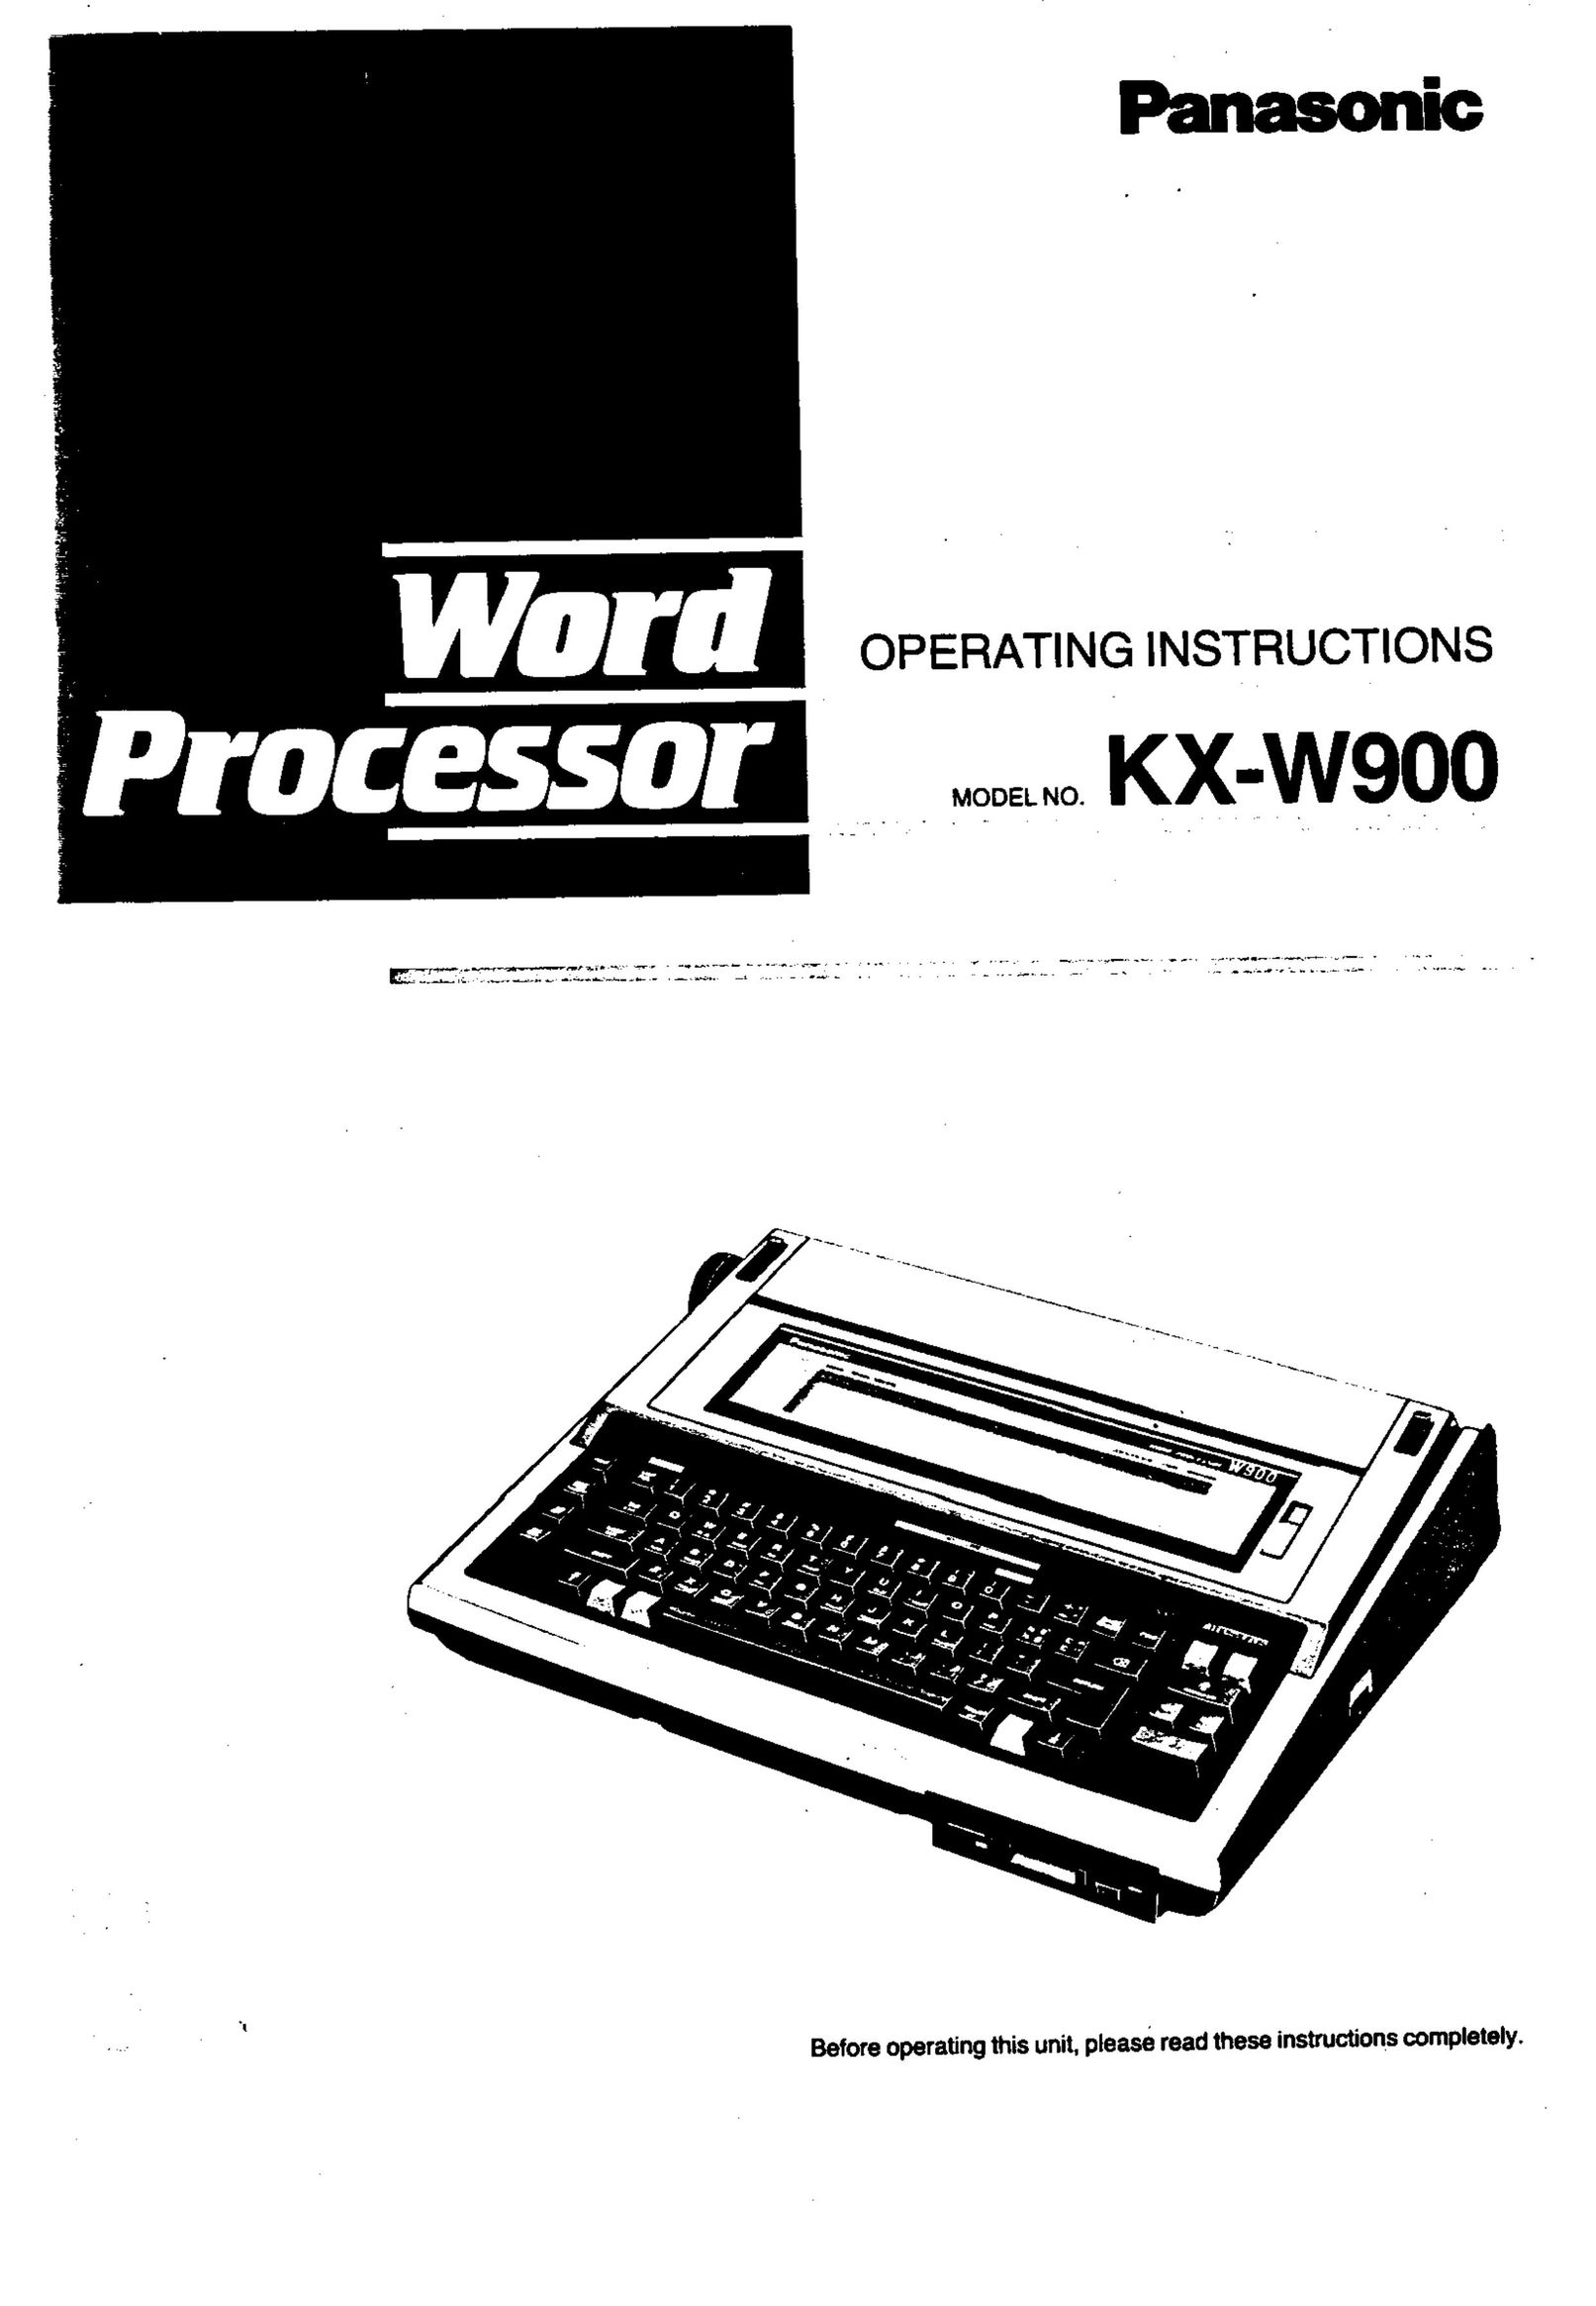 Panasonic KX-W900 Typewriter User Manual